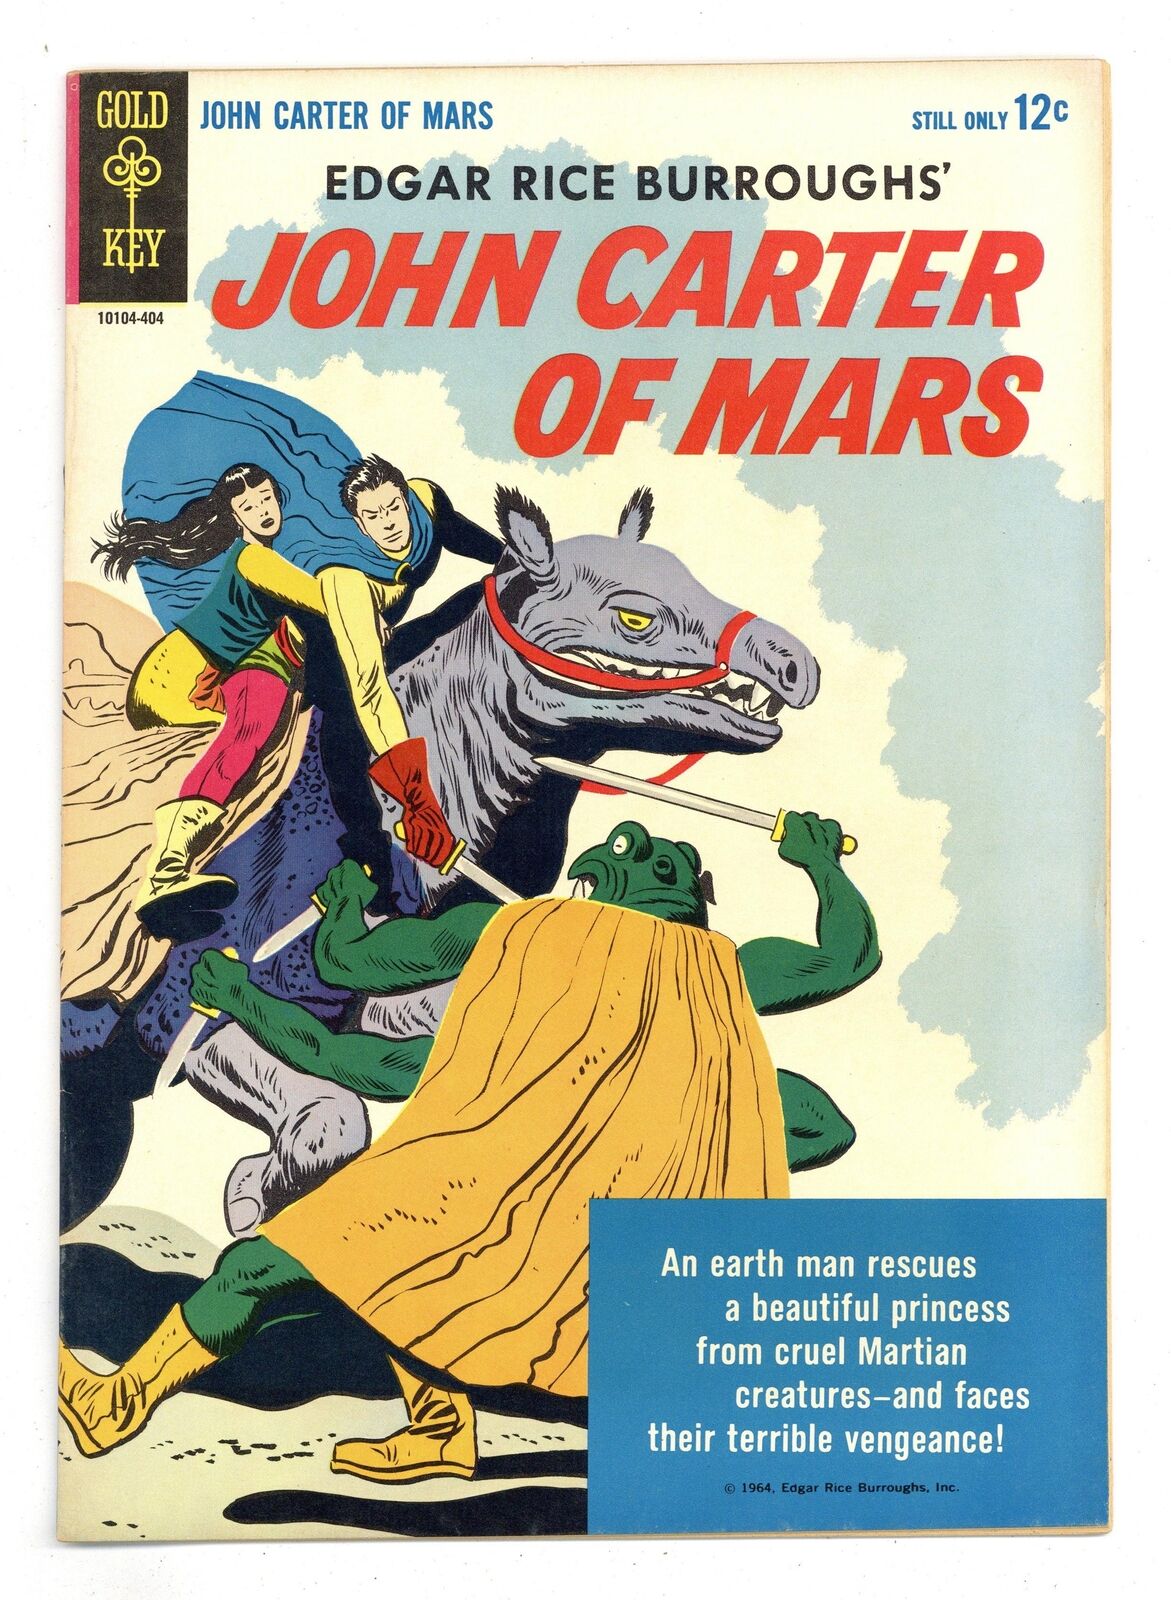 John Carter of Mars #1 FN 6.0 1964